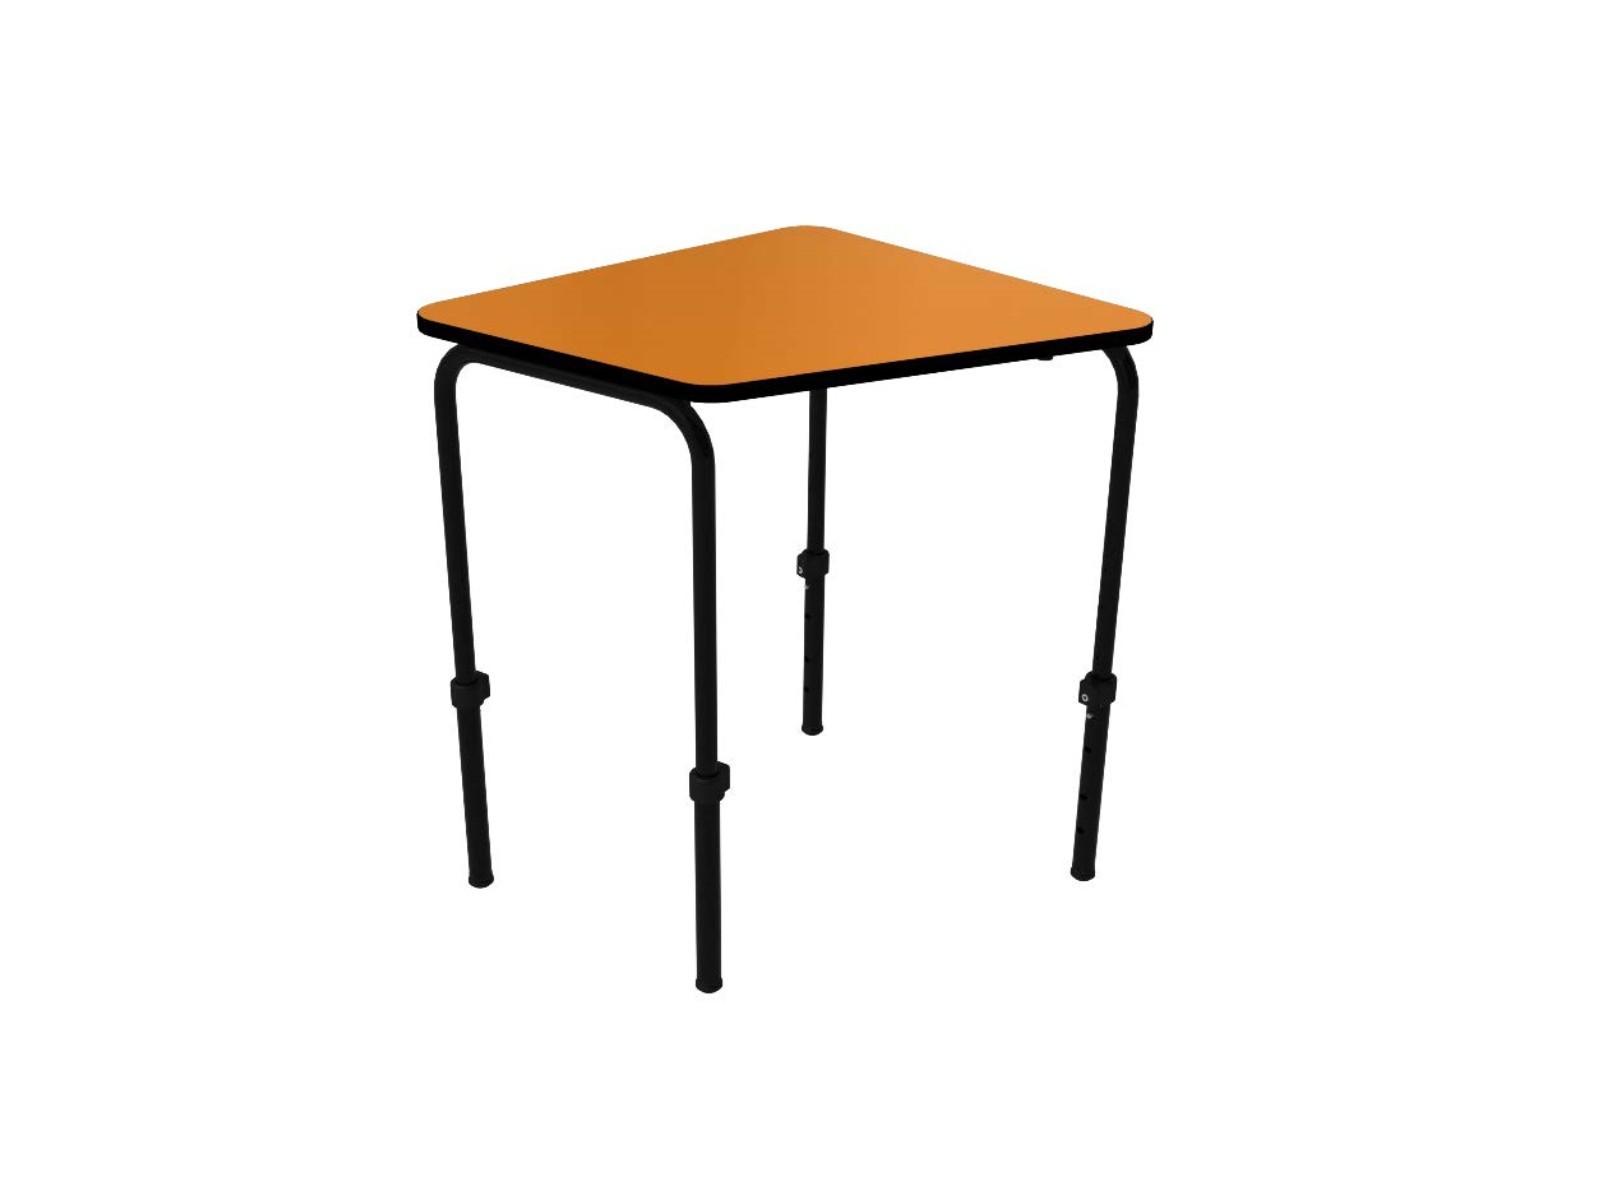 Table scolaire réglable en hauteur du Programme 345, un mobilier scolaire innovant